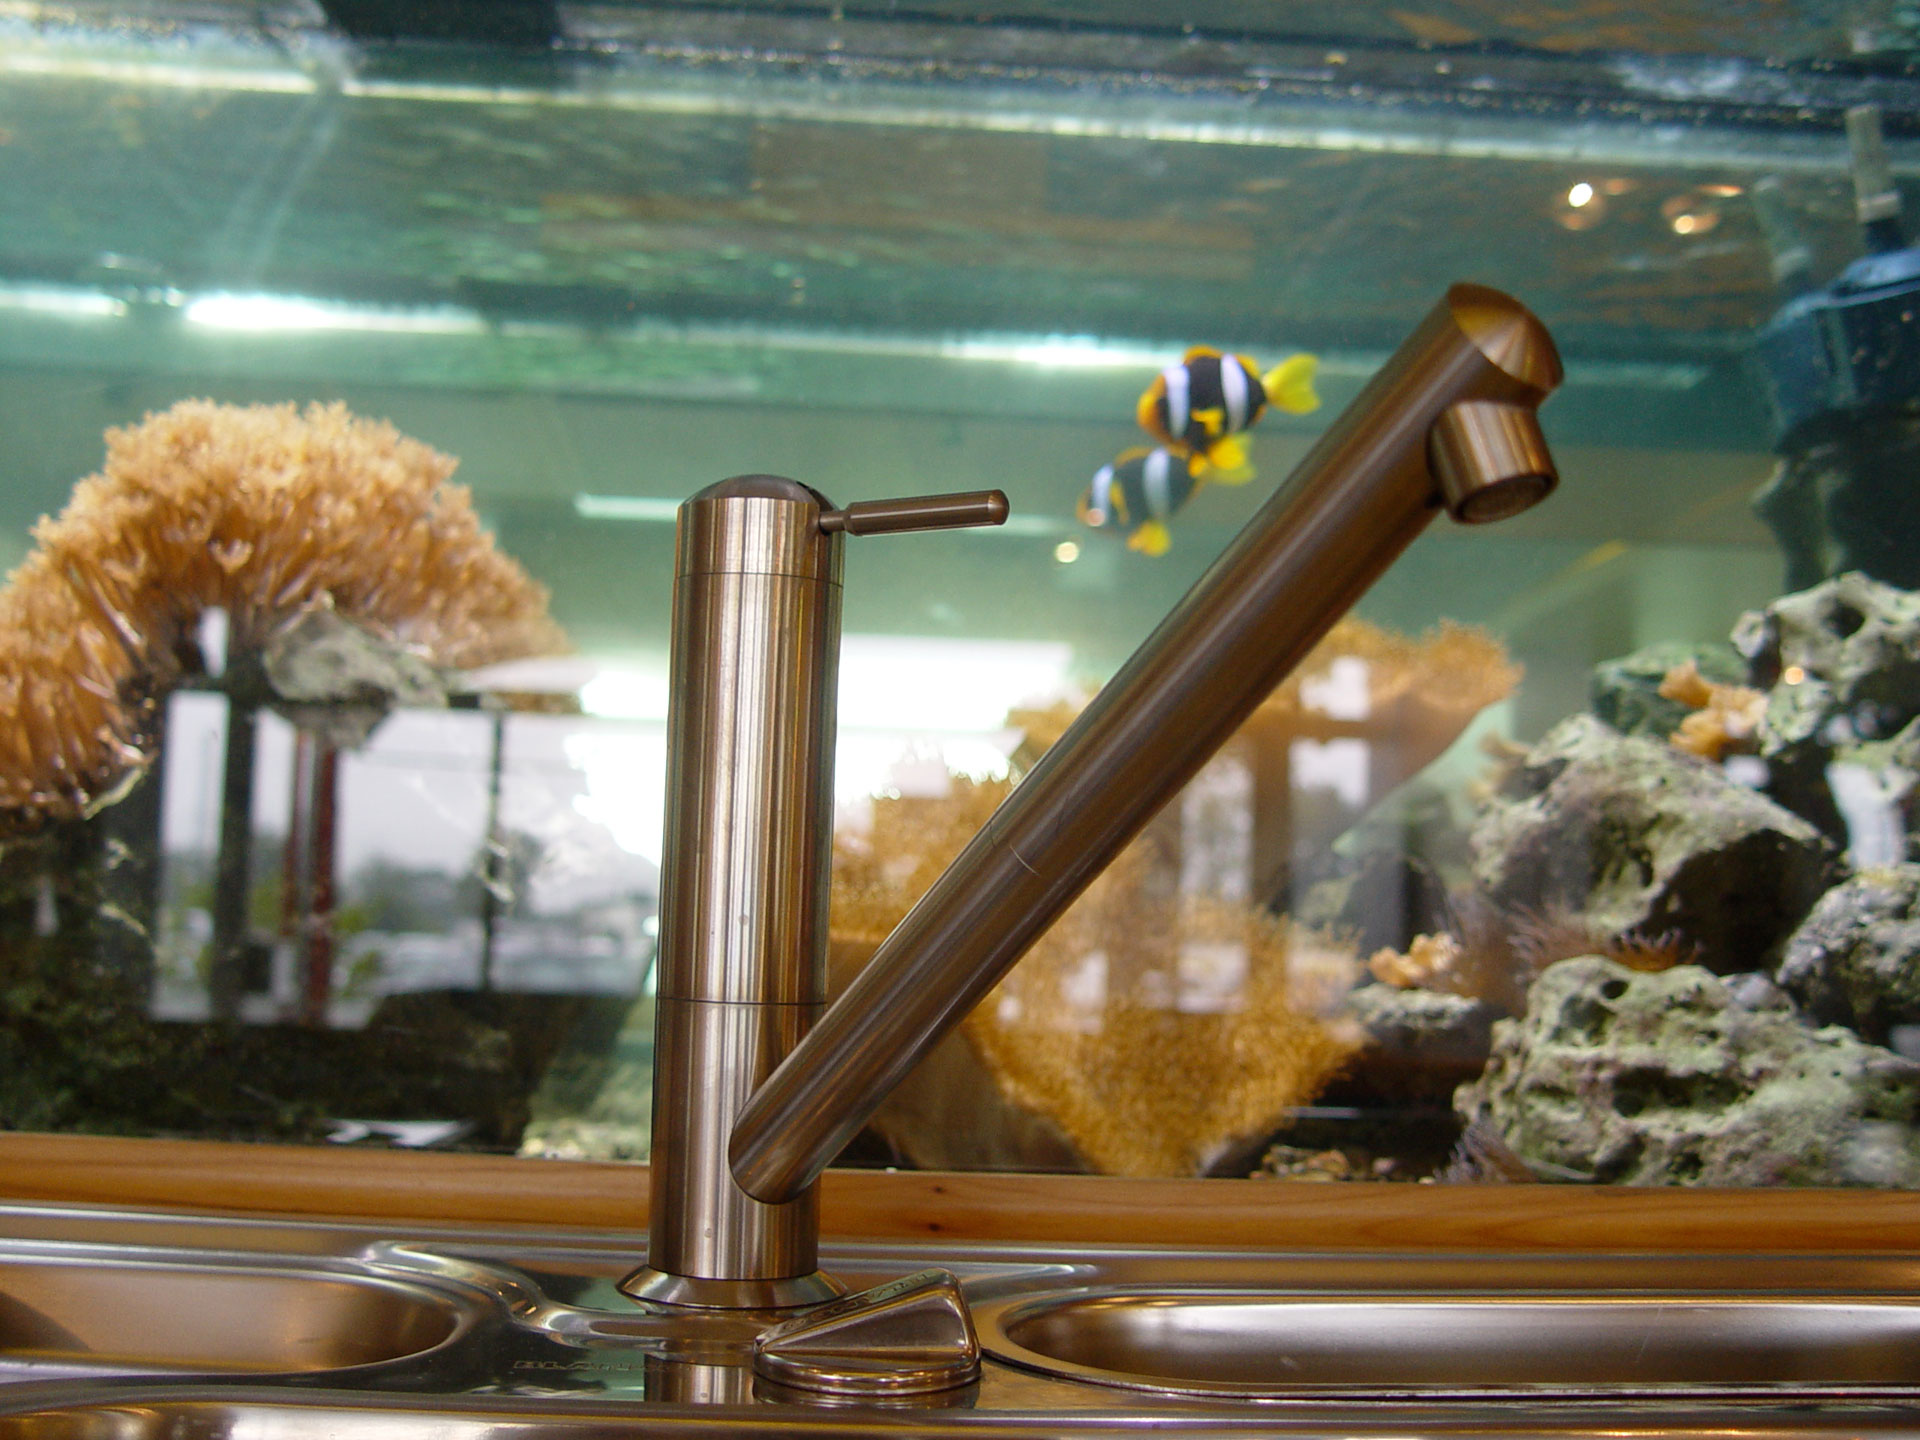 Meerwasseraquarium in Küche